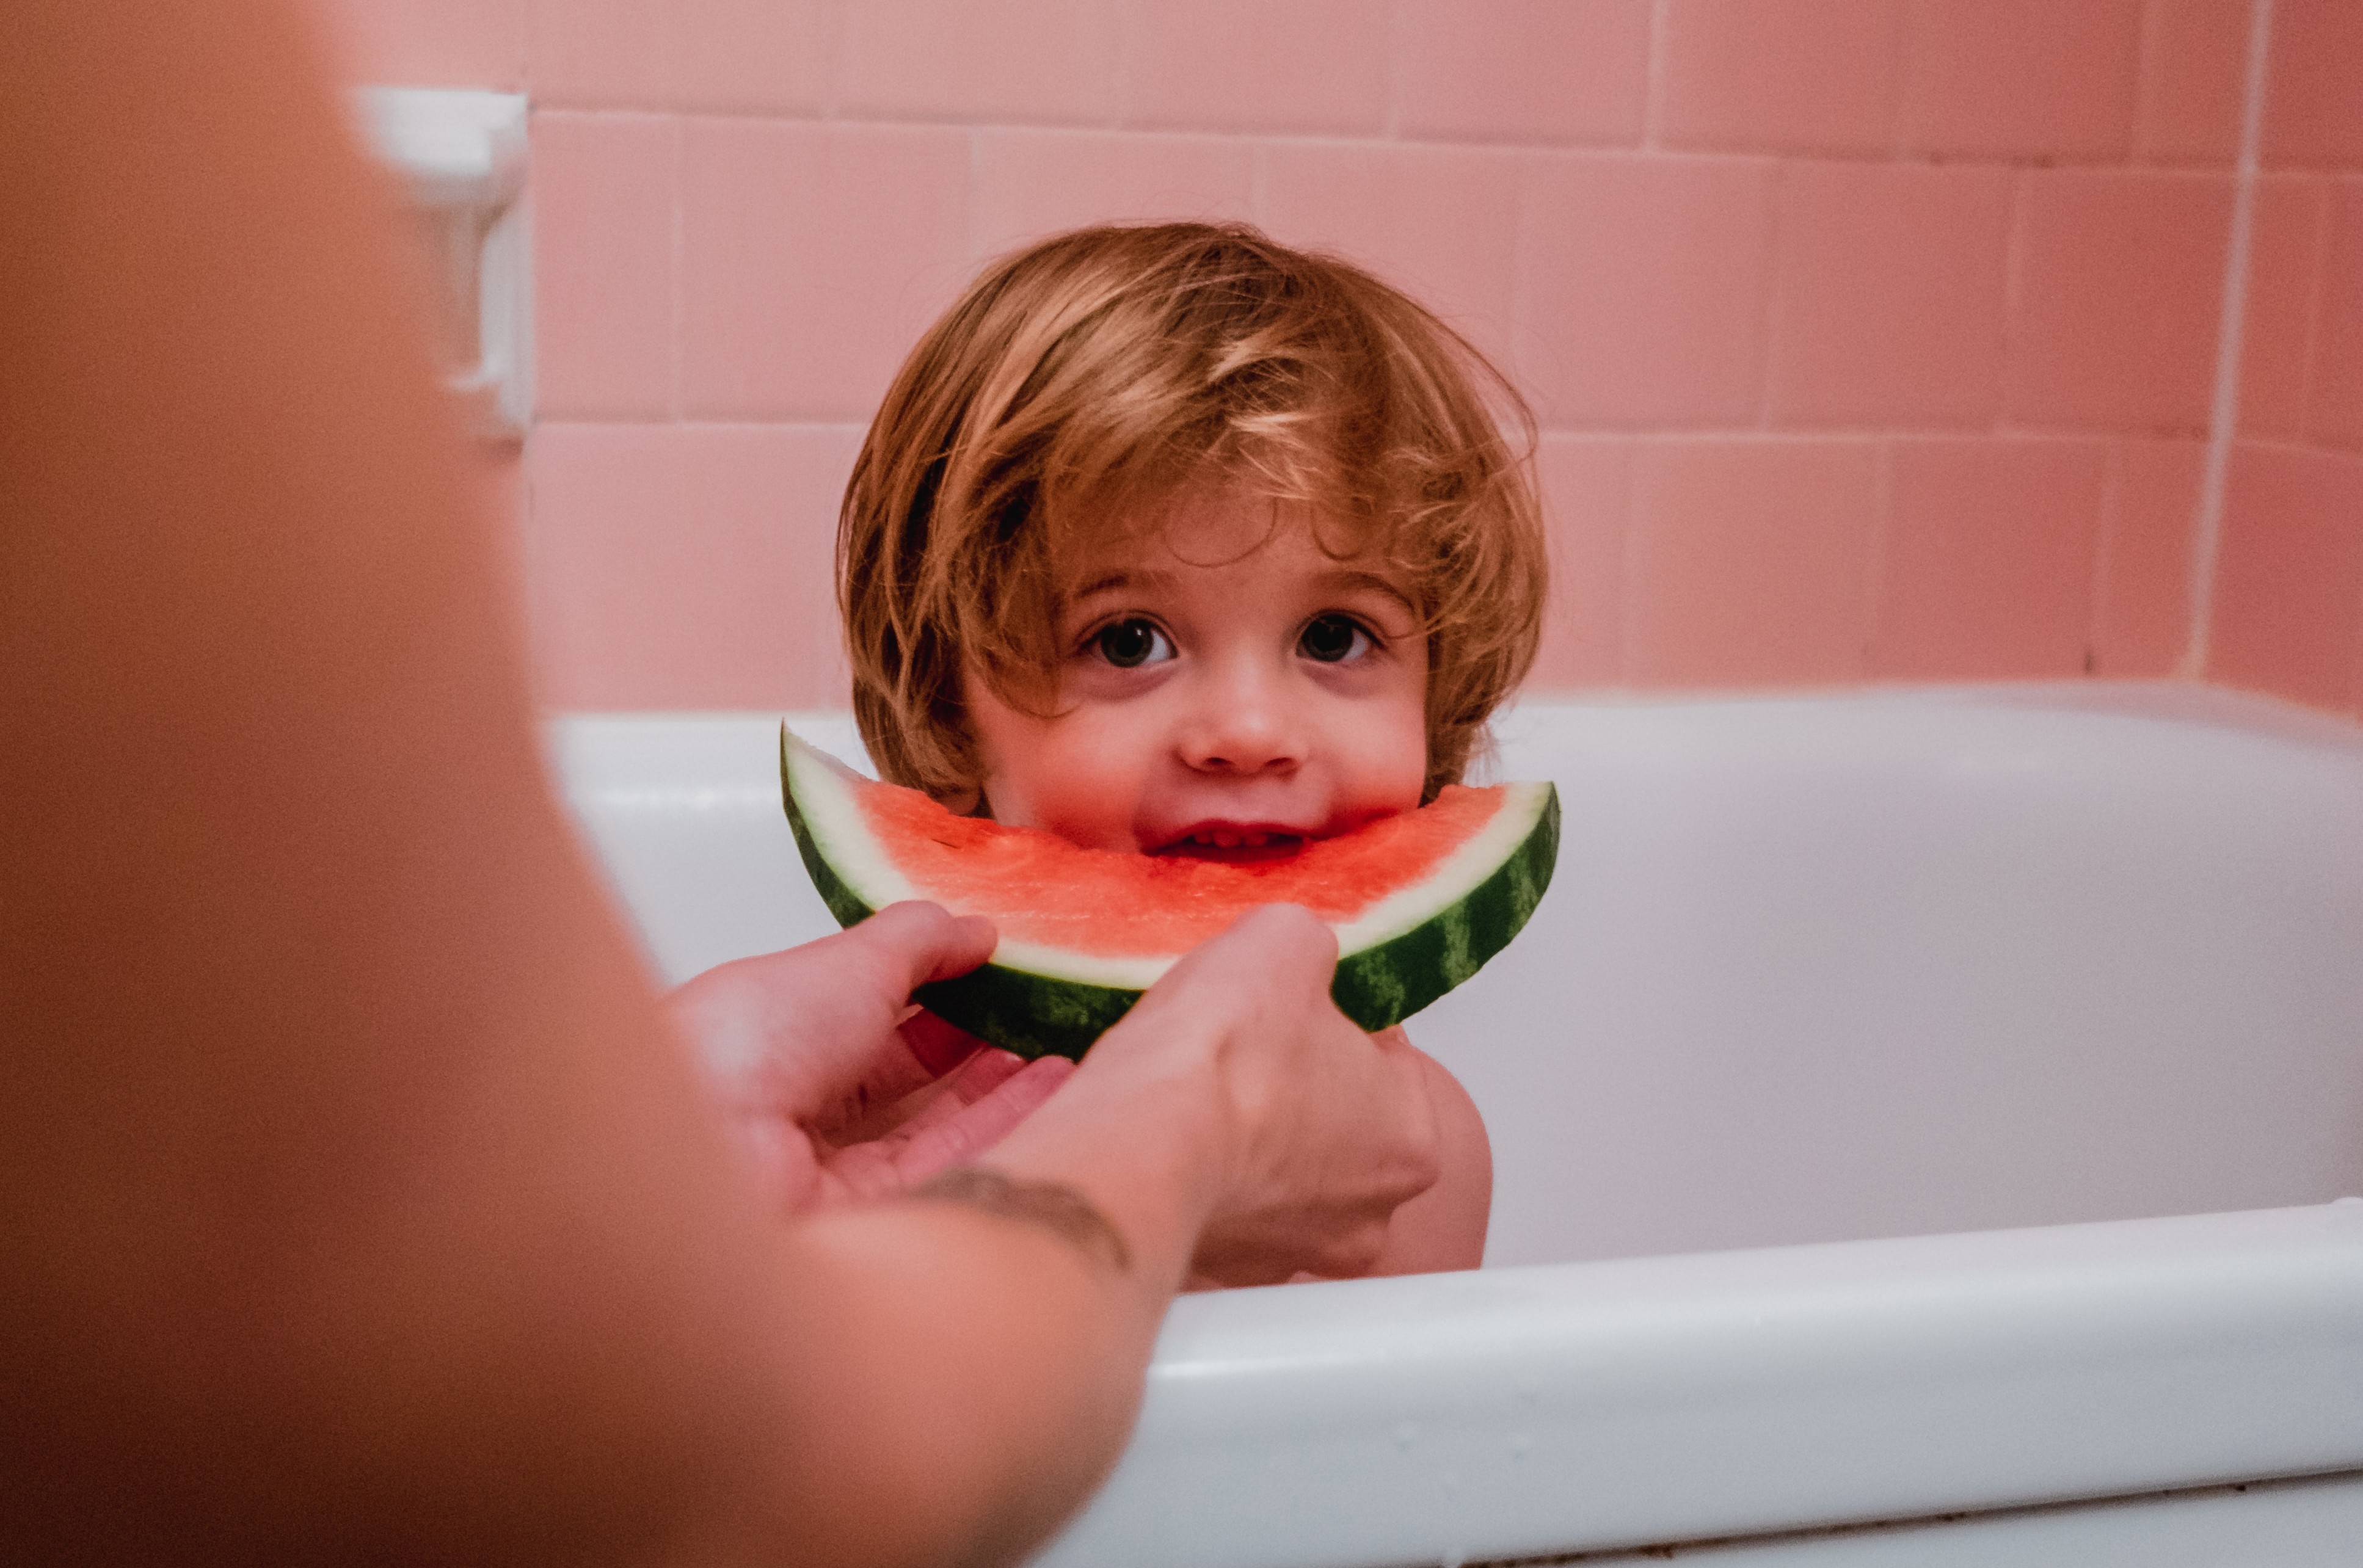 Alimentação na infância pode impactar saúde pelo resto da vida (Foto: Kyle Nieber / Unsplash)